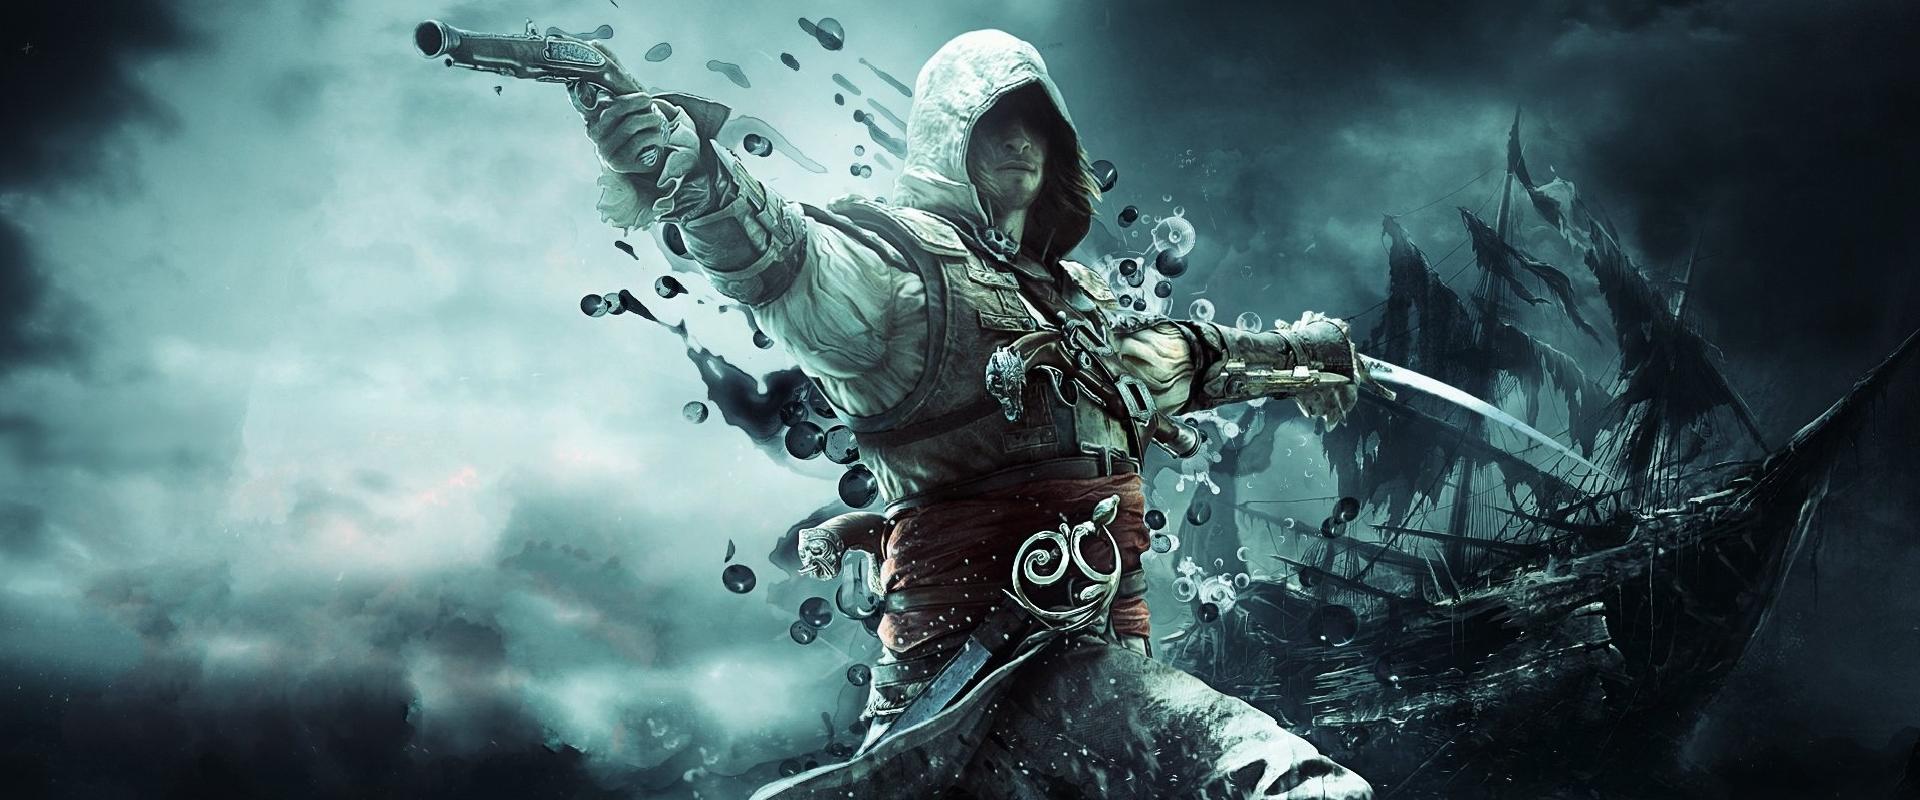 Már évek óta fejlesztik az Assassin's Creed IV: Black Flag Remake-et